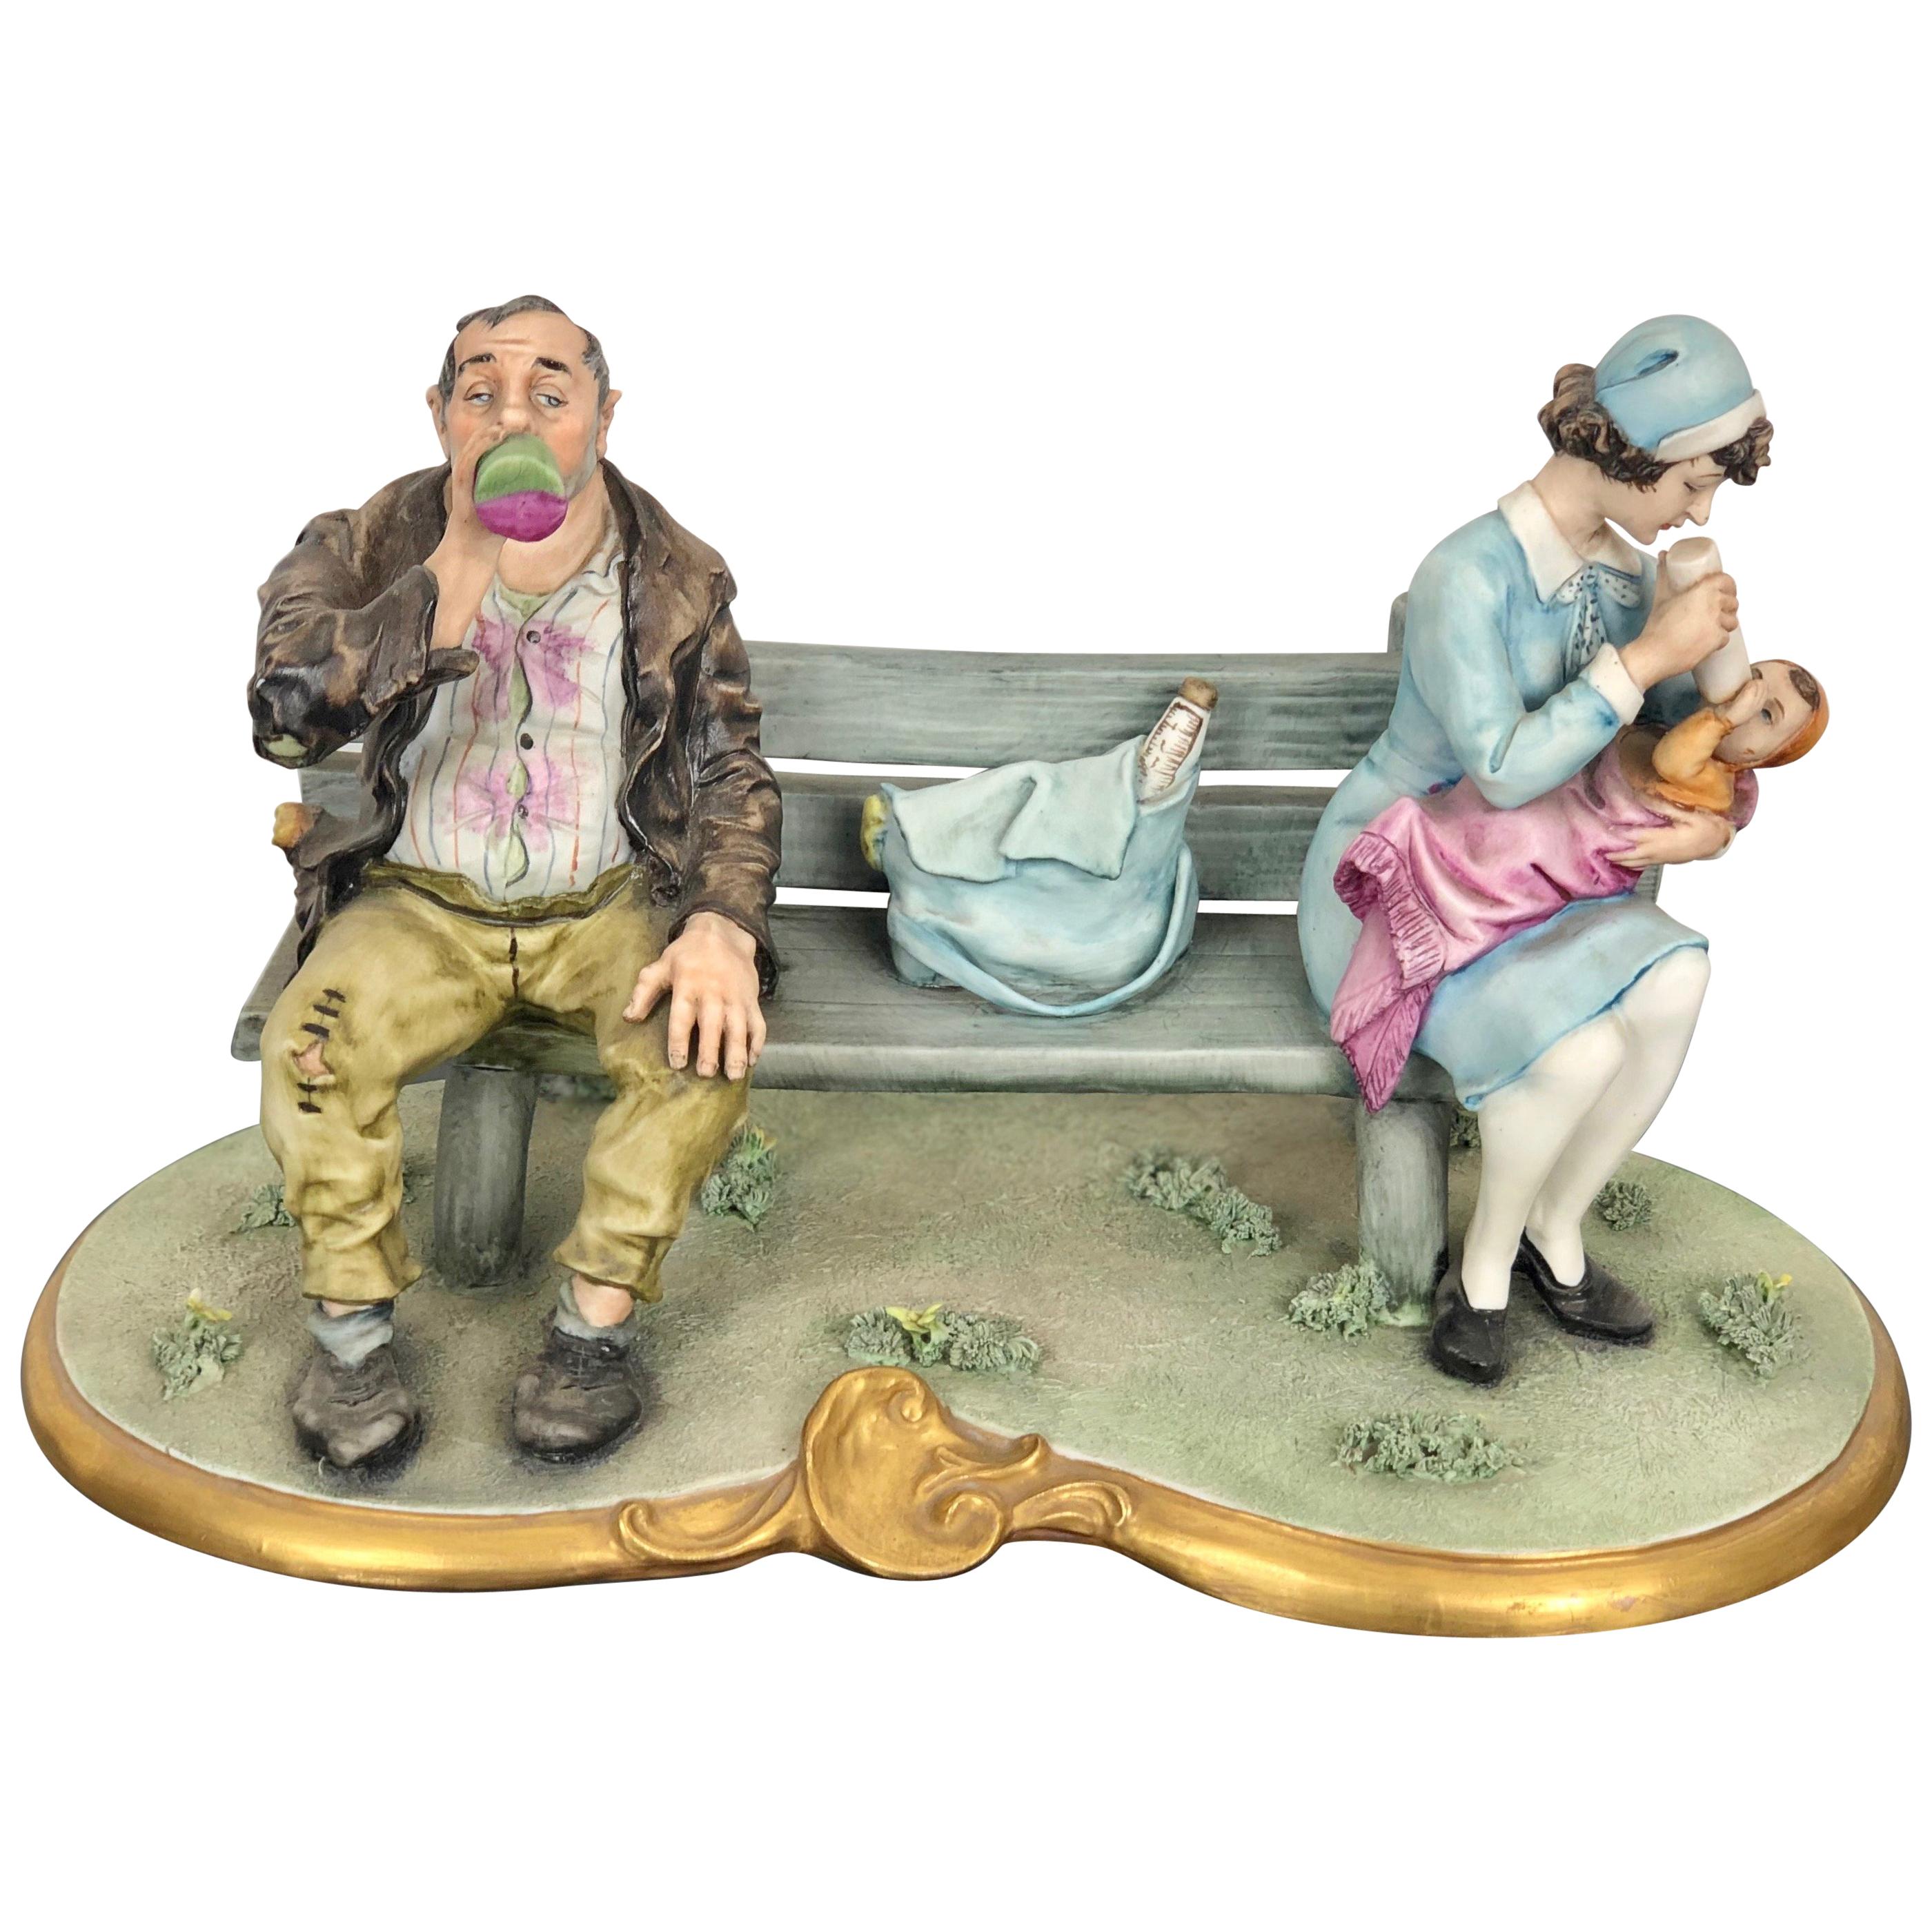 Capodimonte-Porzellan-Skulptur Tramp und eine Nanny auf einer Bank, De Palmas, Italien